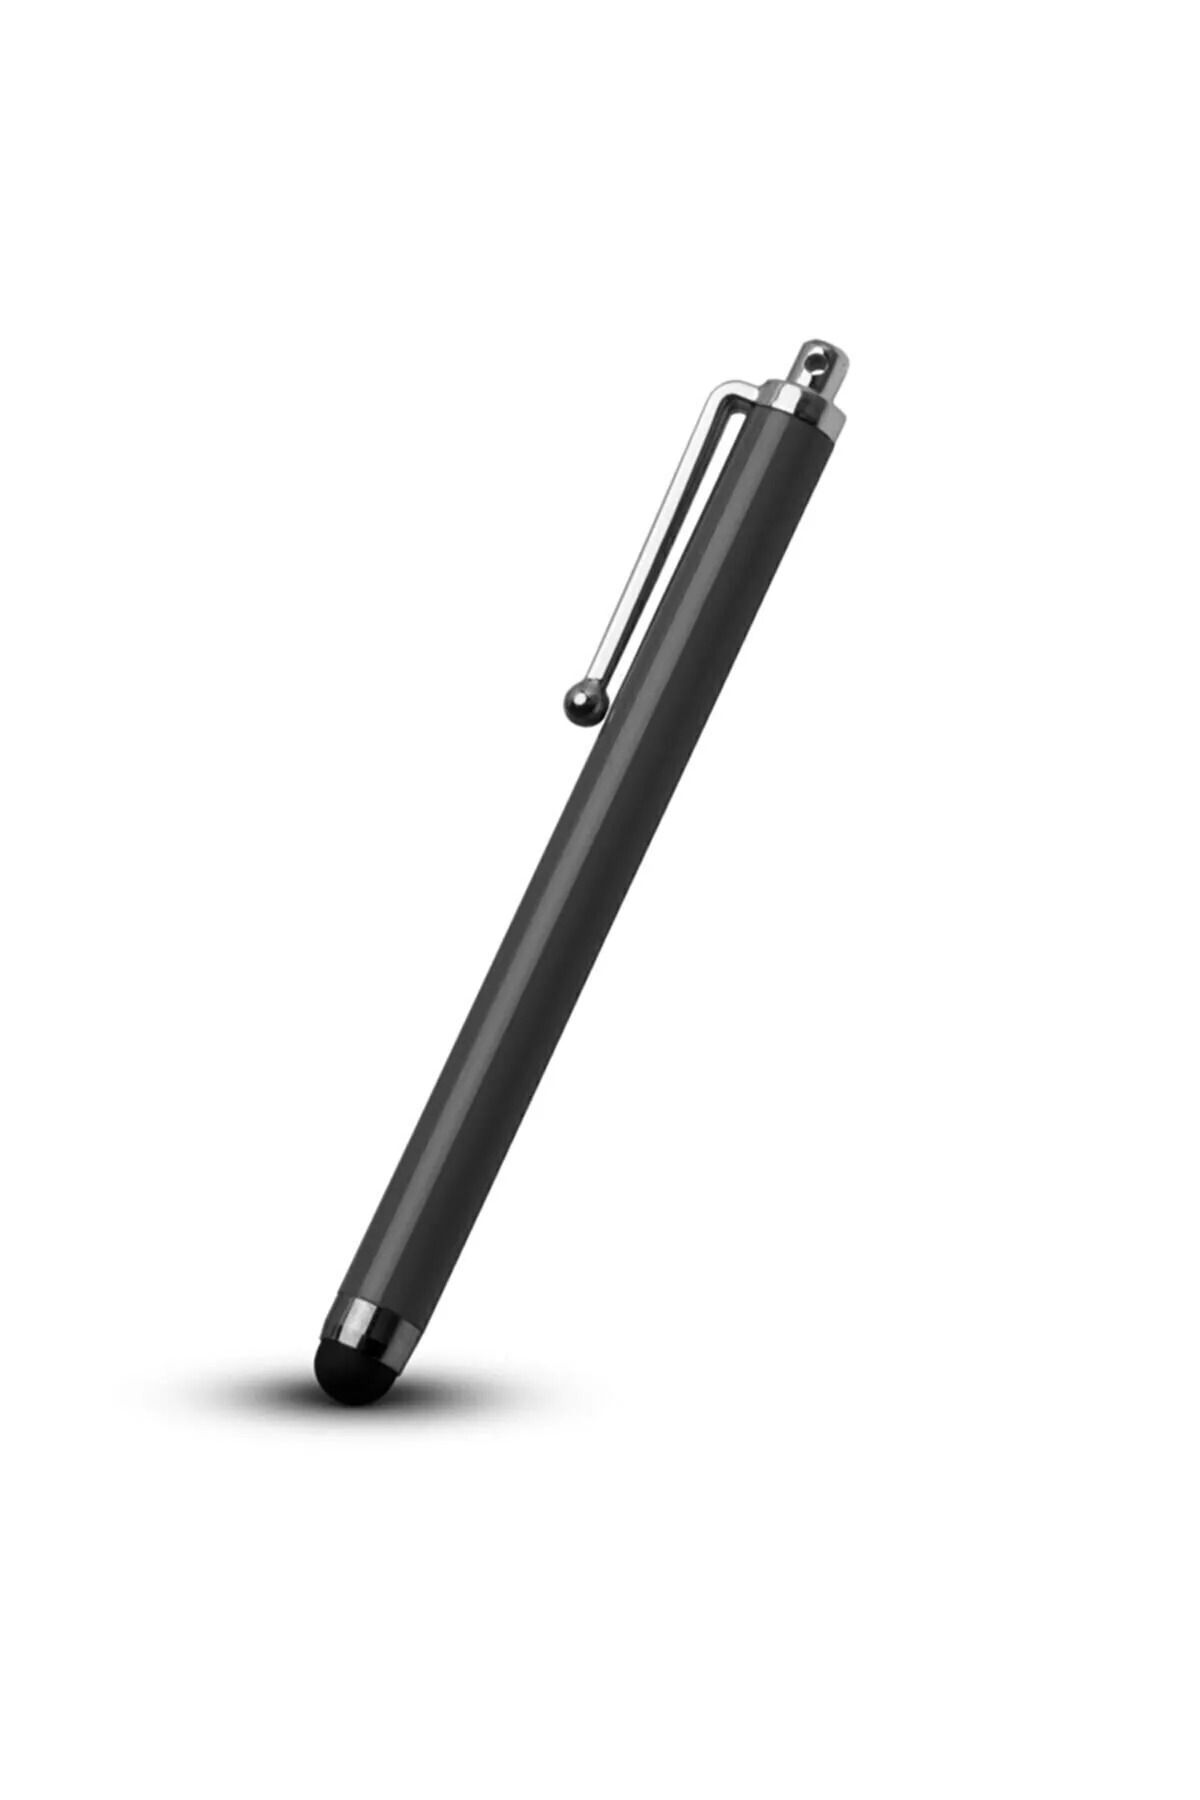 Fibaks Tüm Dokunmatik Cihazlarla Uyumlu Akıllı Tahta - Tablet - Telefon Dokunmatik Kalemi Siyah